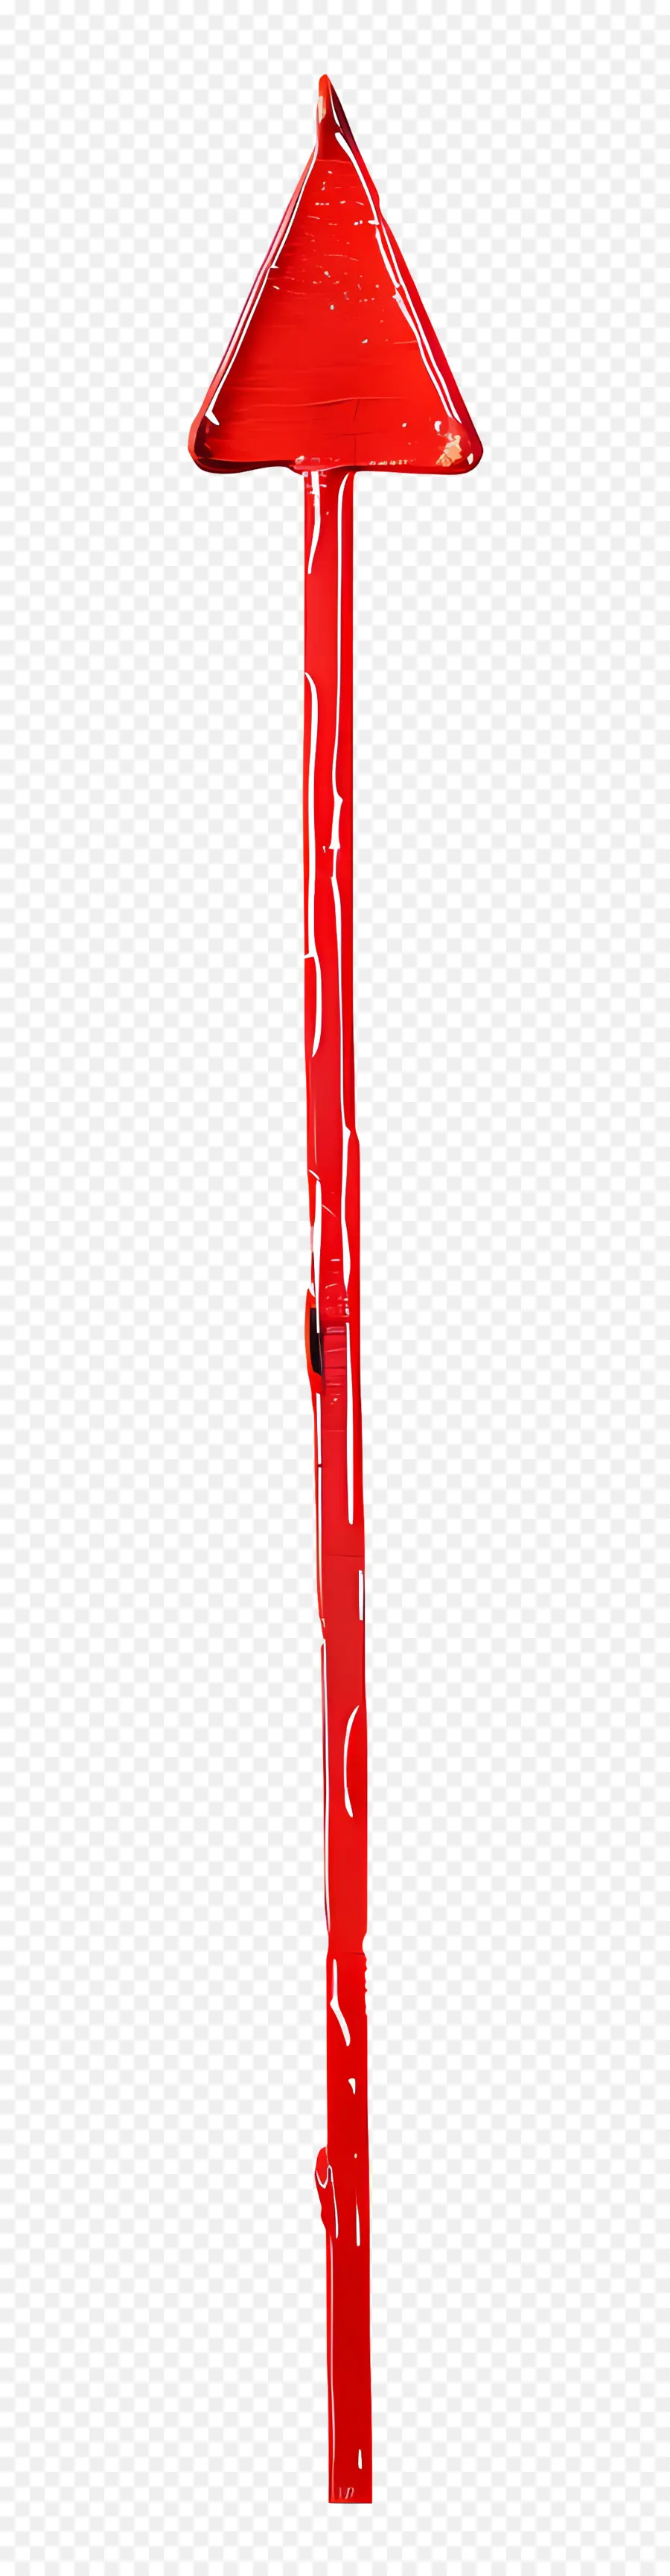 mũi tên đỏ - Hình dạng mũi tên màu đỏ trên nền đen